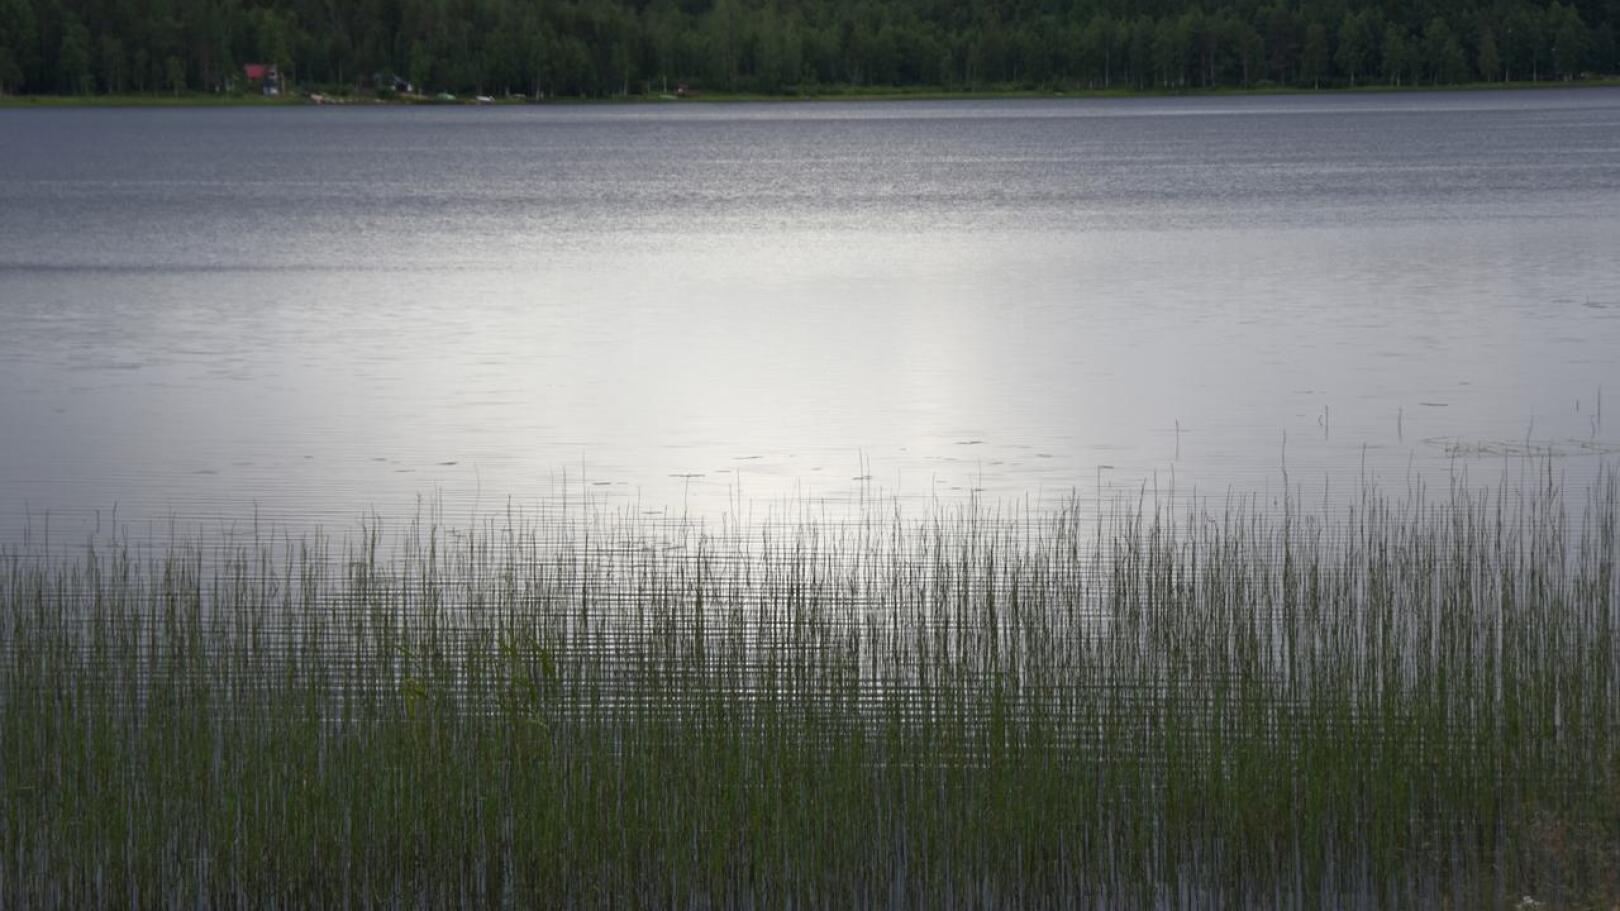 Vatjusjärven selkä on sateisella säällä kuin impressionistinen maalaus.